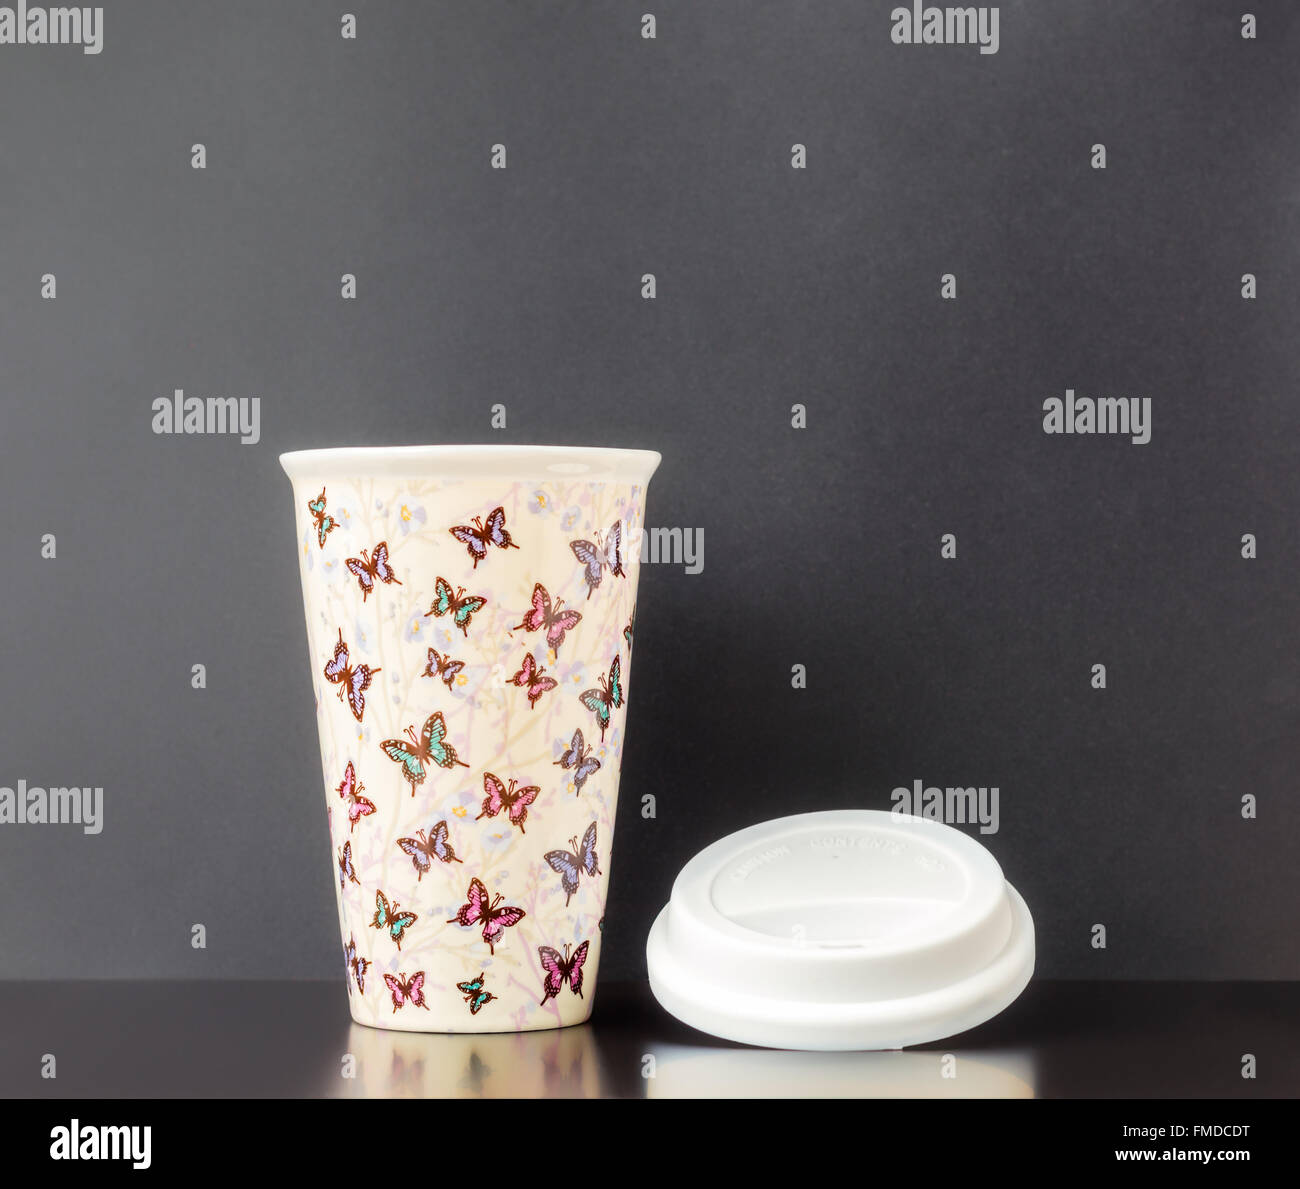 Deckel aus Keramik isolierte Tasse mit bunten Schmetterling Muster und dunkelgrauen Hintergrund. Stockfoto